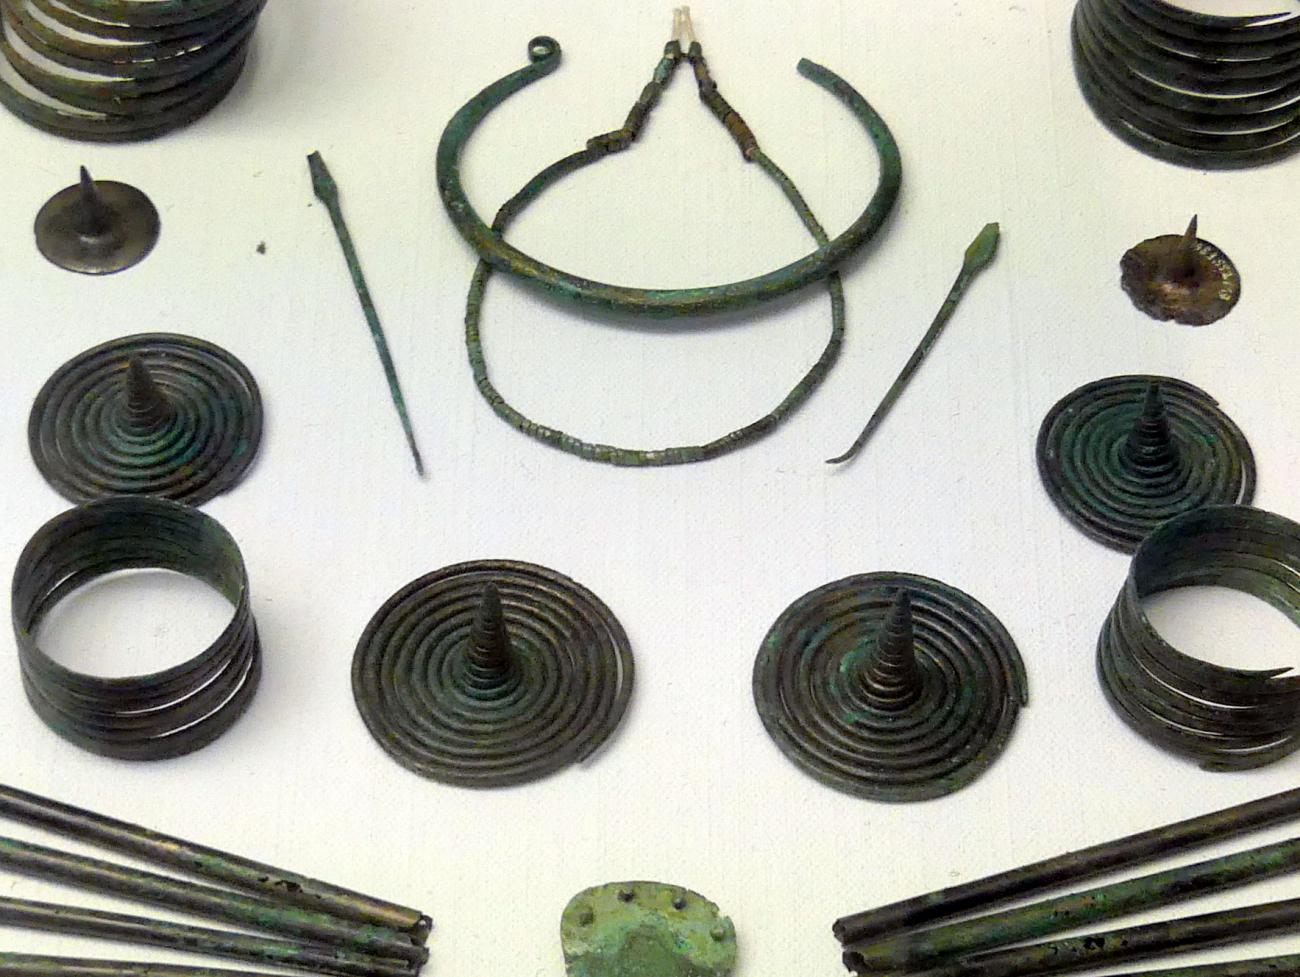 4 Spiraltutuli, Frühe Bronzezeit, 3365 - 1200 v. Chr.